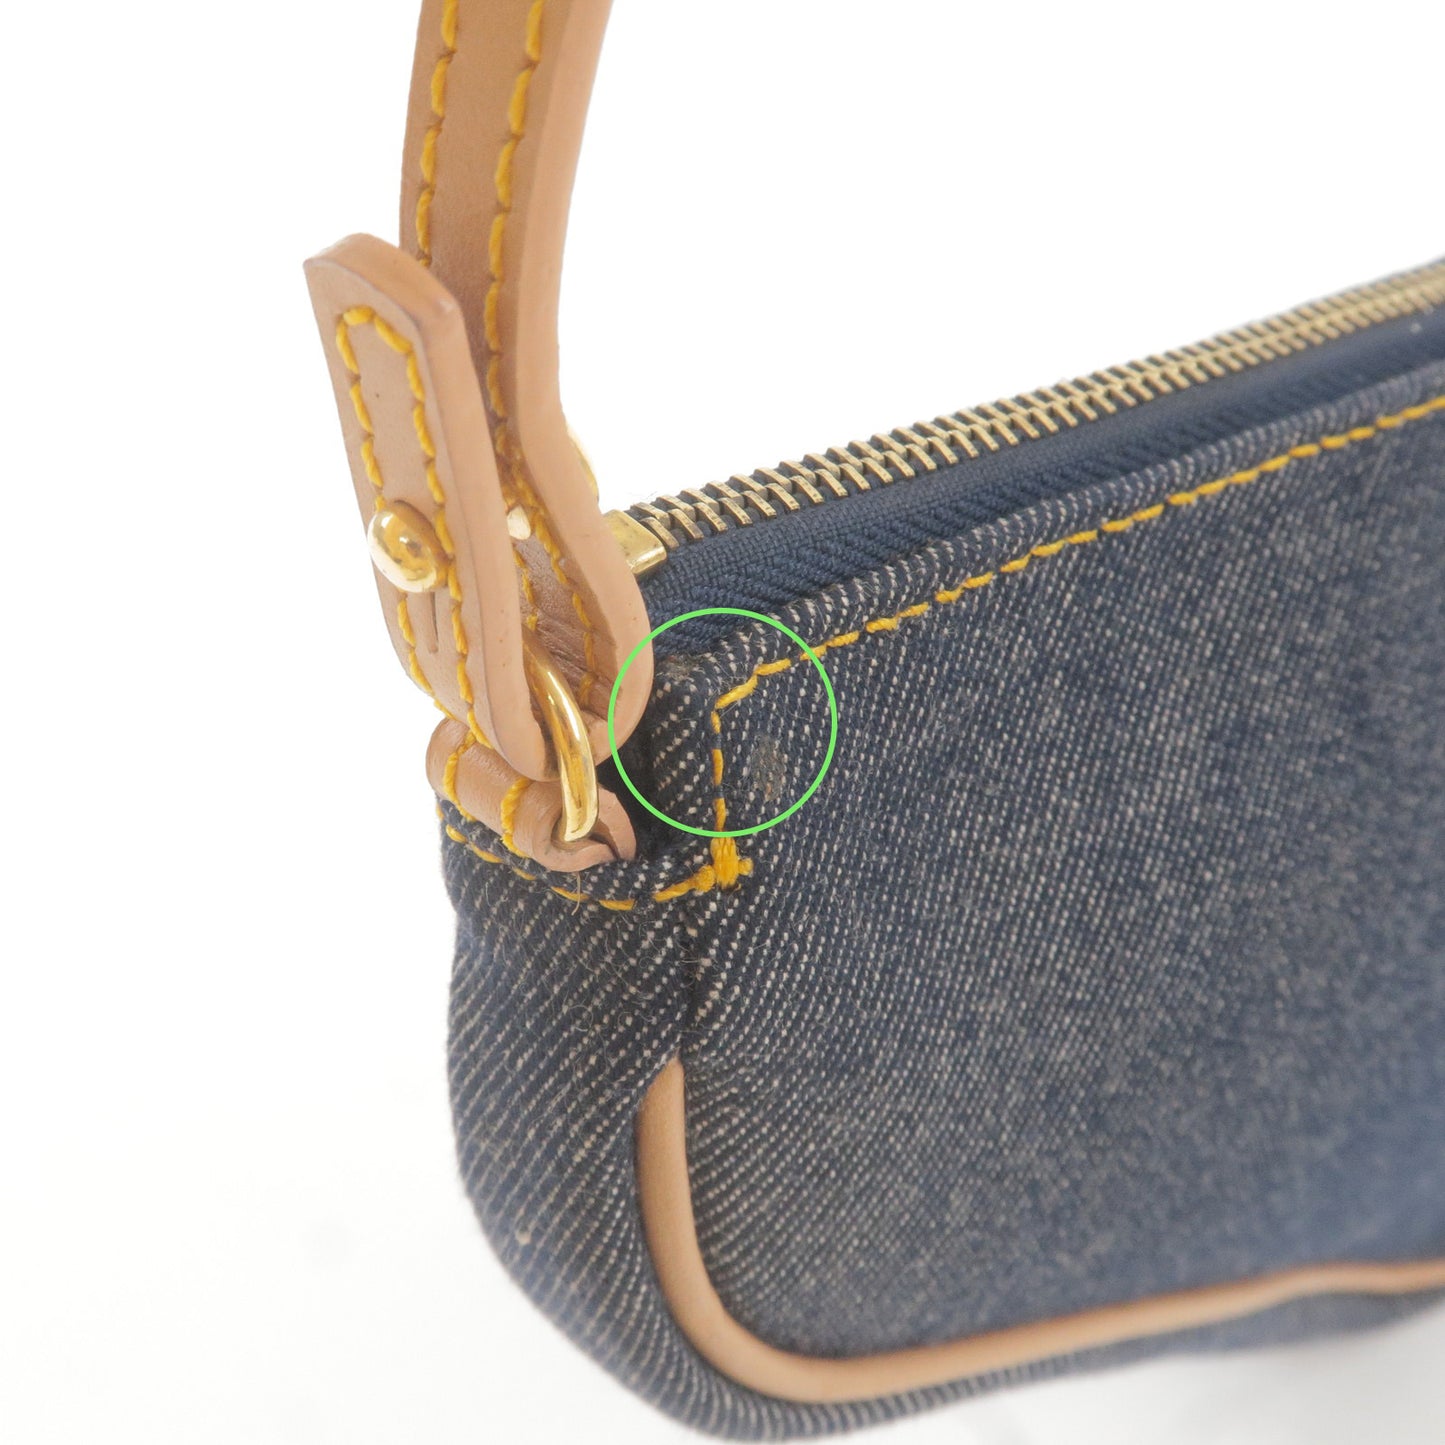 Christian Dior Denim Leather Saddle Bag Shoulder Bag Navy